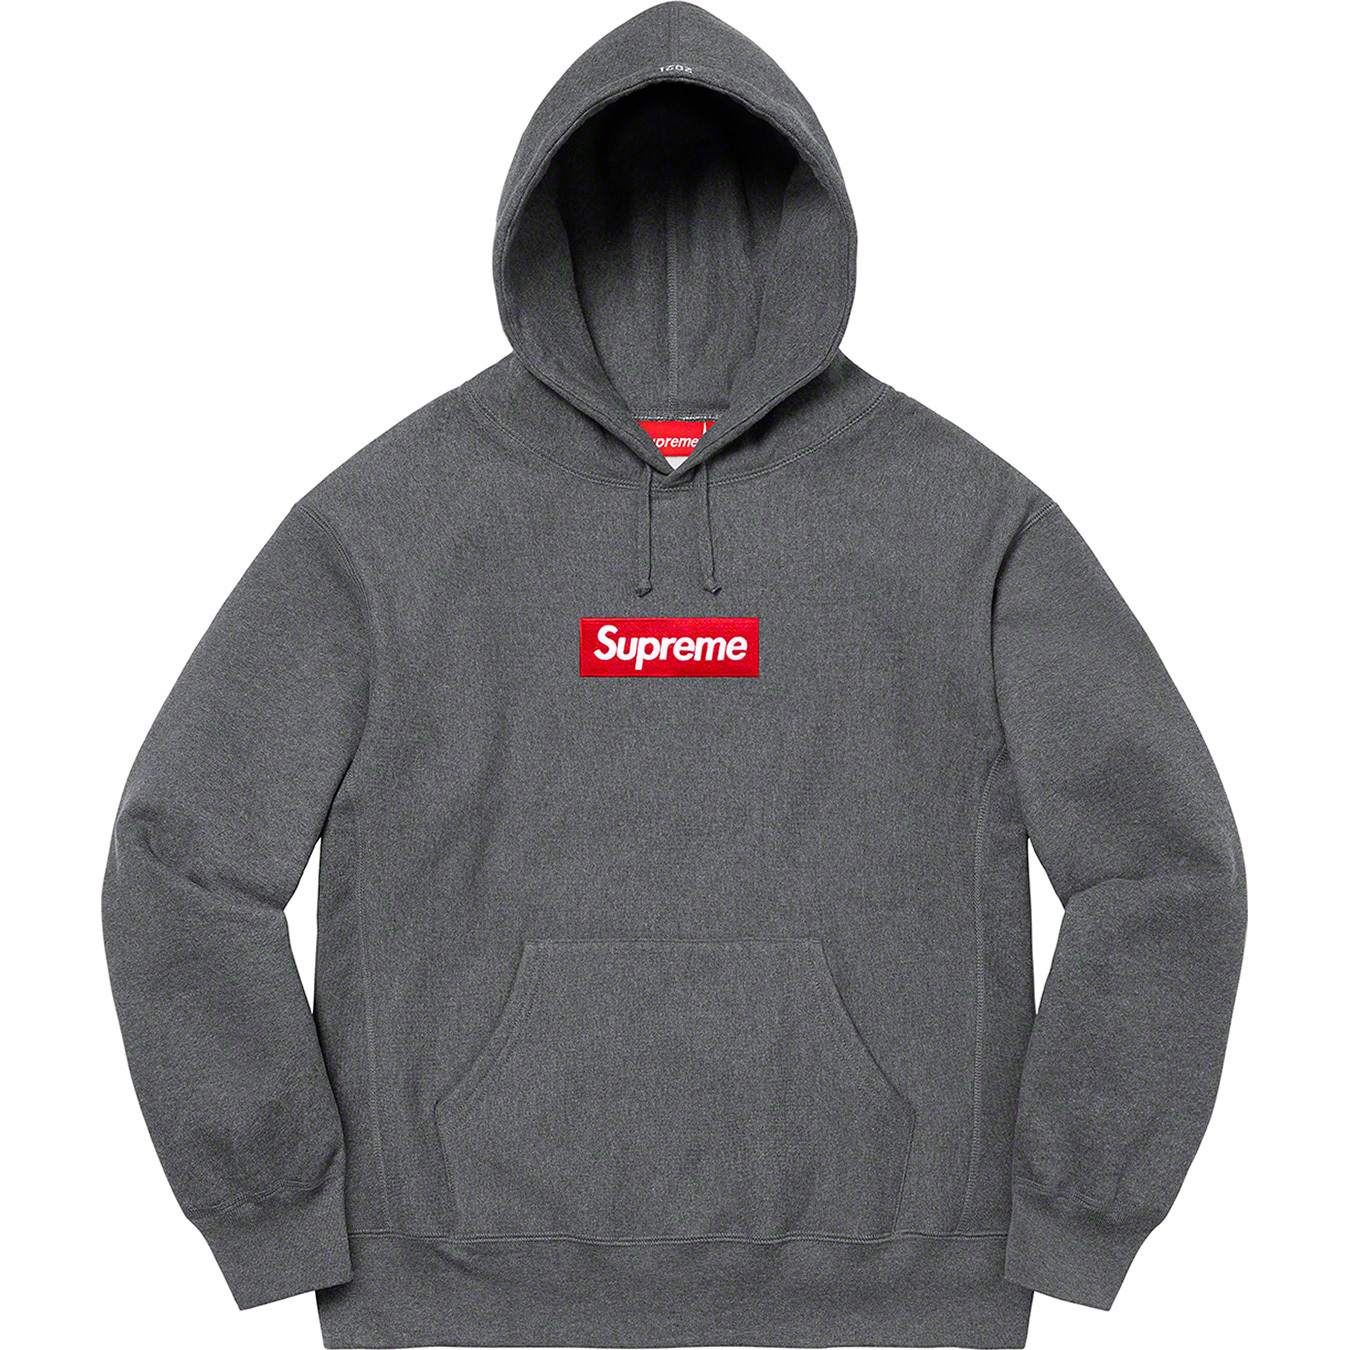 Unboxing Supreme Box Logo Hooded Sweatshirt FW 